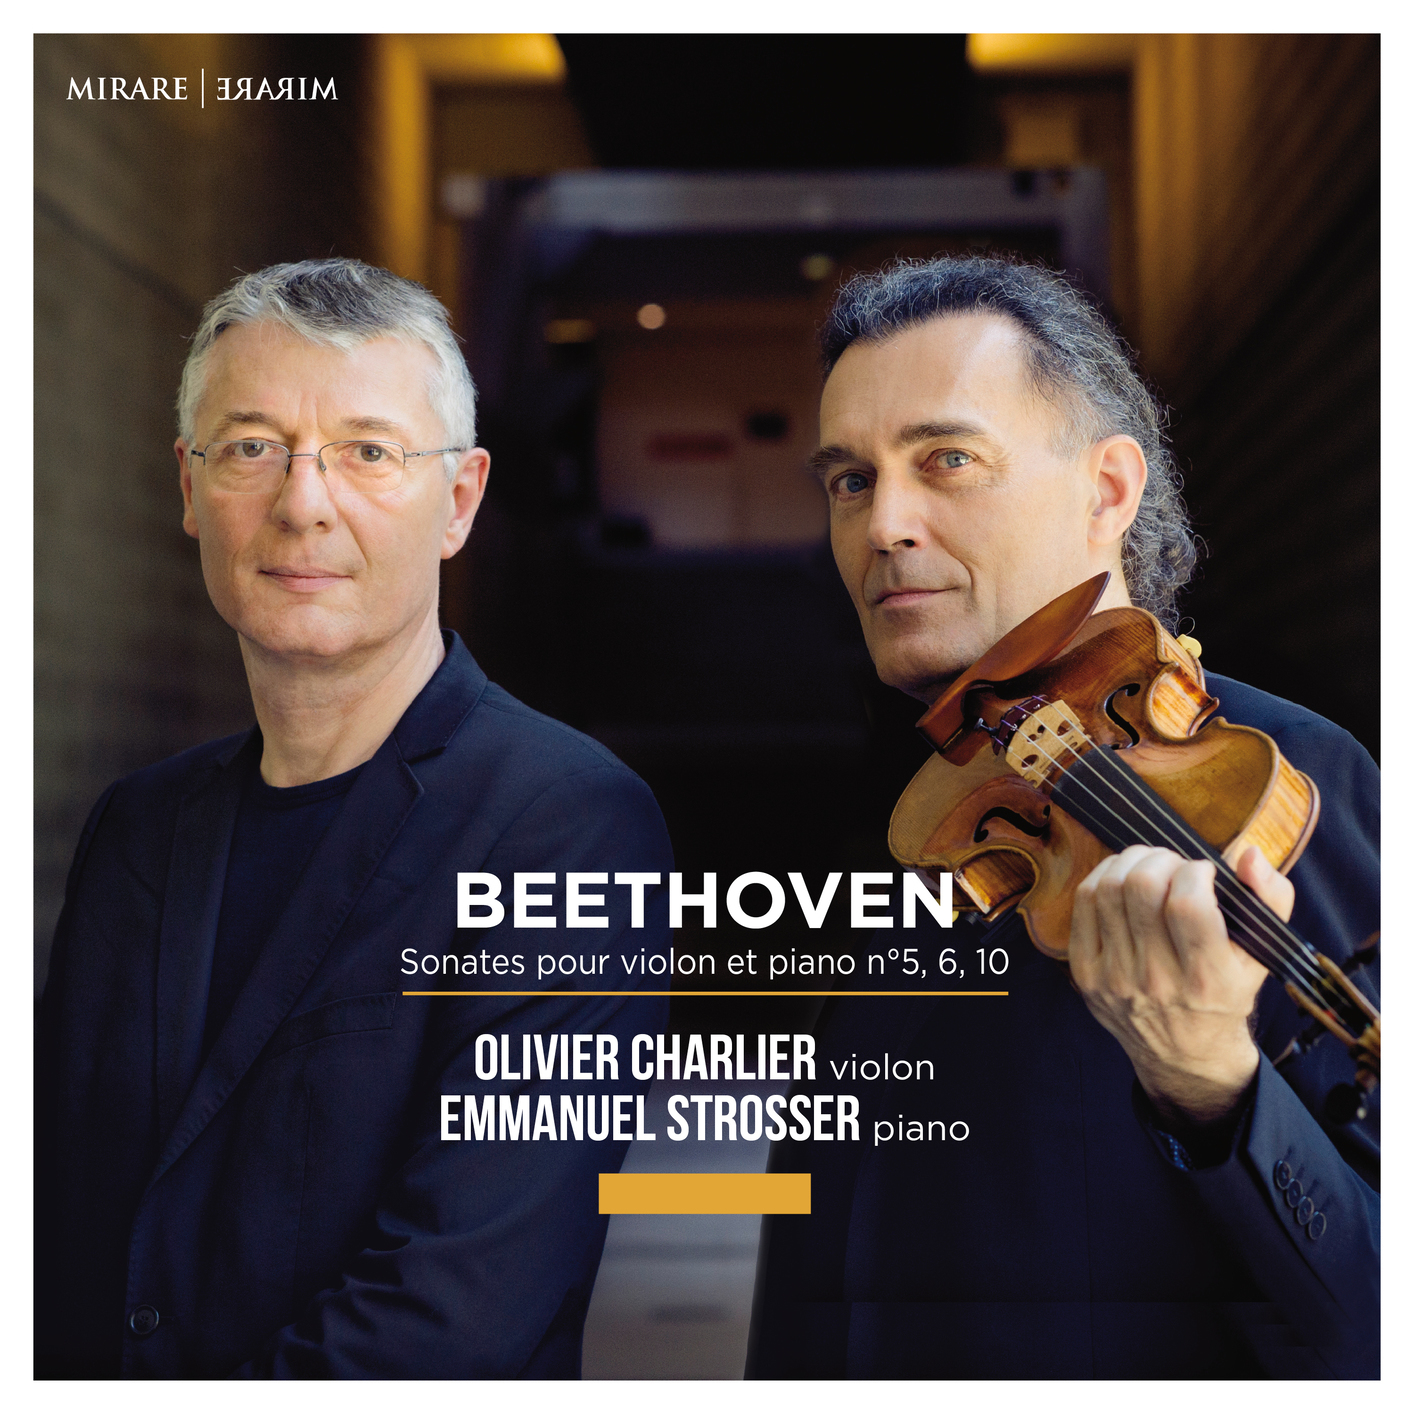 Olivier Charlier & Emmanuel Strosser - Beethoven: Sonates pour violon et piano (2020) [FLAC 24bit/96kHz]